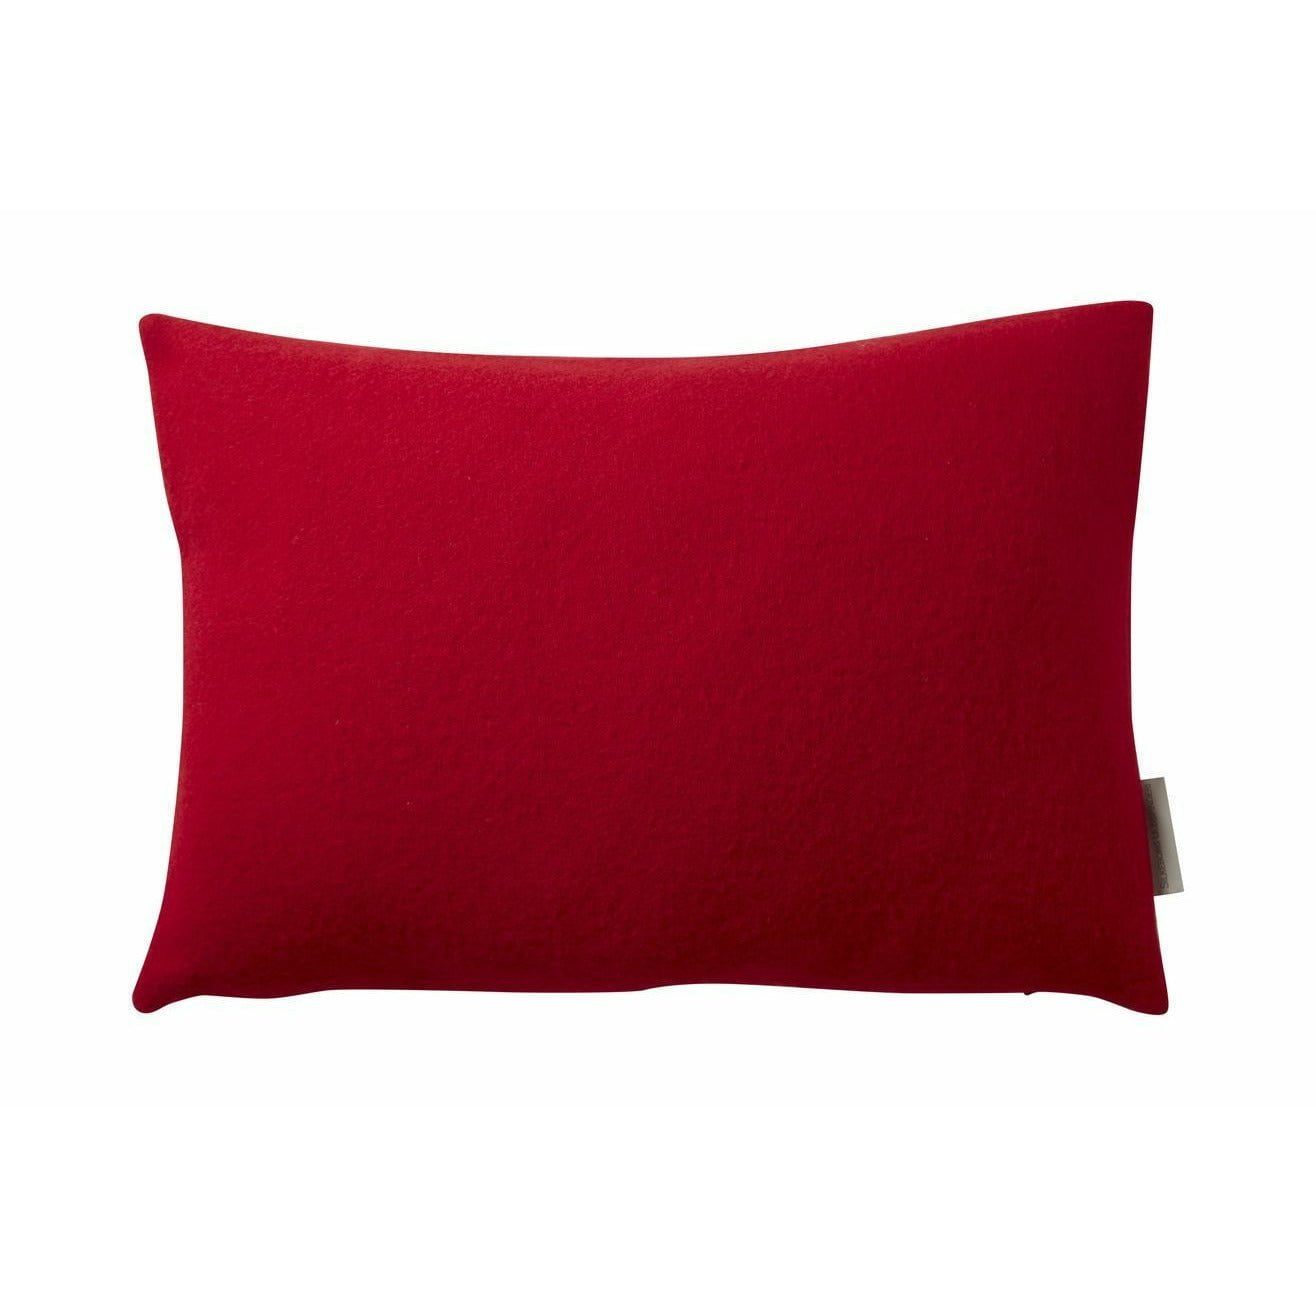 Silkorg Uldspinderi Athens Cushion 60 x40 cm, verdadero rojo